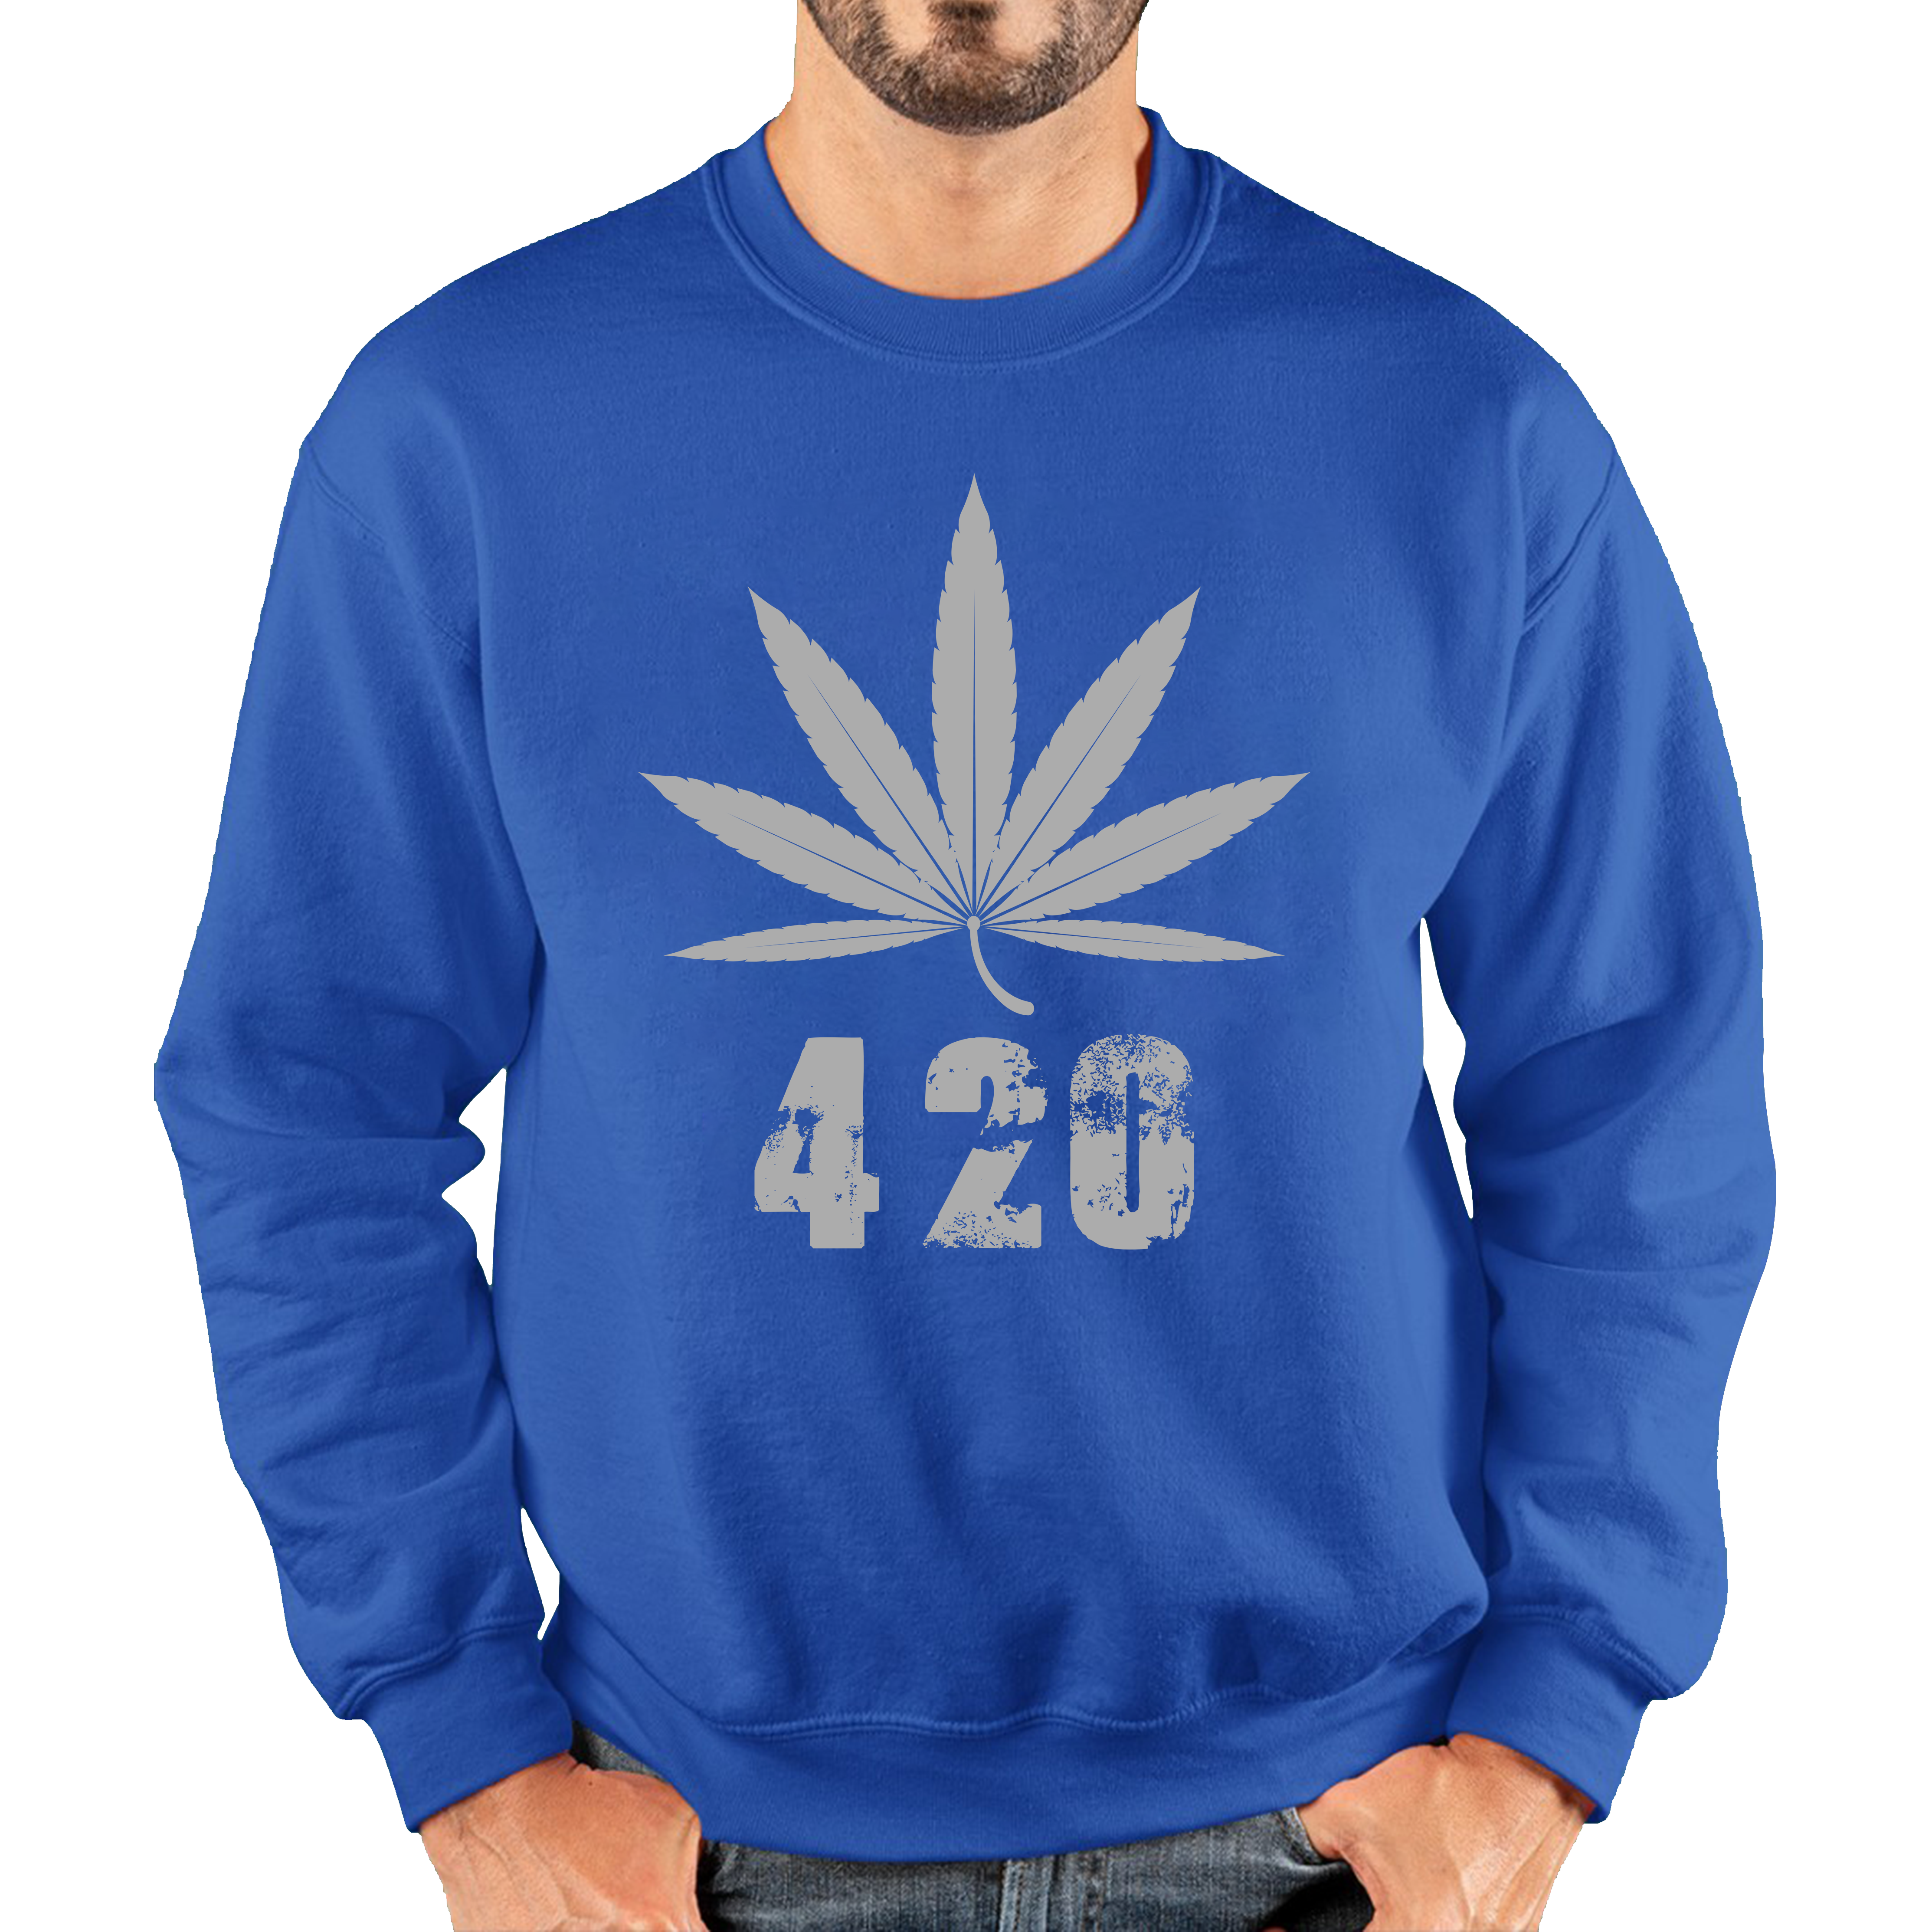 Weed Cannabis 420 Jumper Weed Lover Sarcastic 420 Funny Marijuana Unisex Sweatshirt